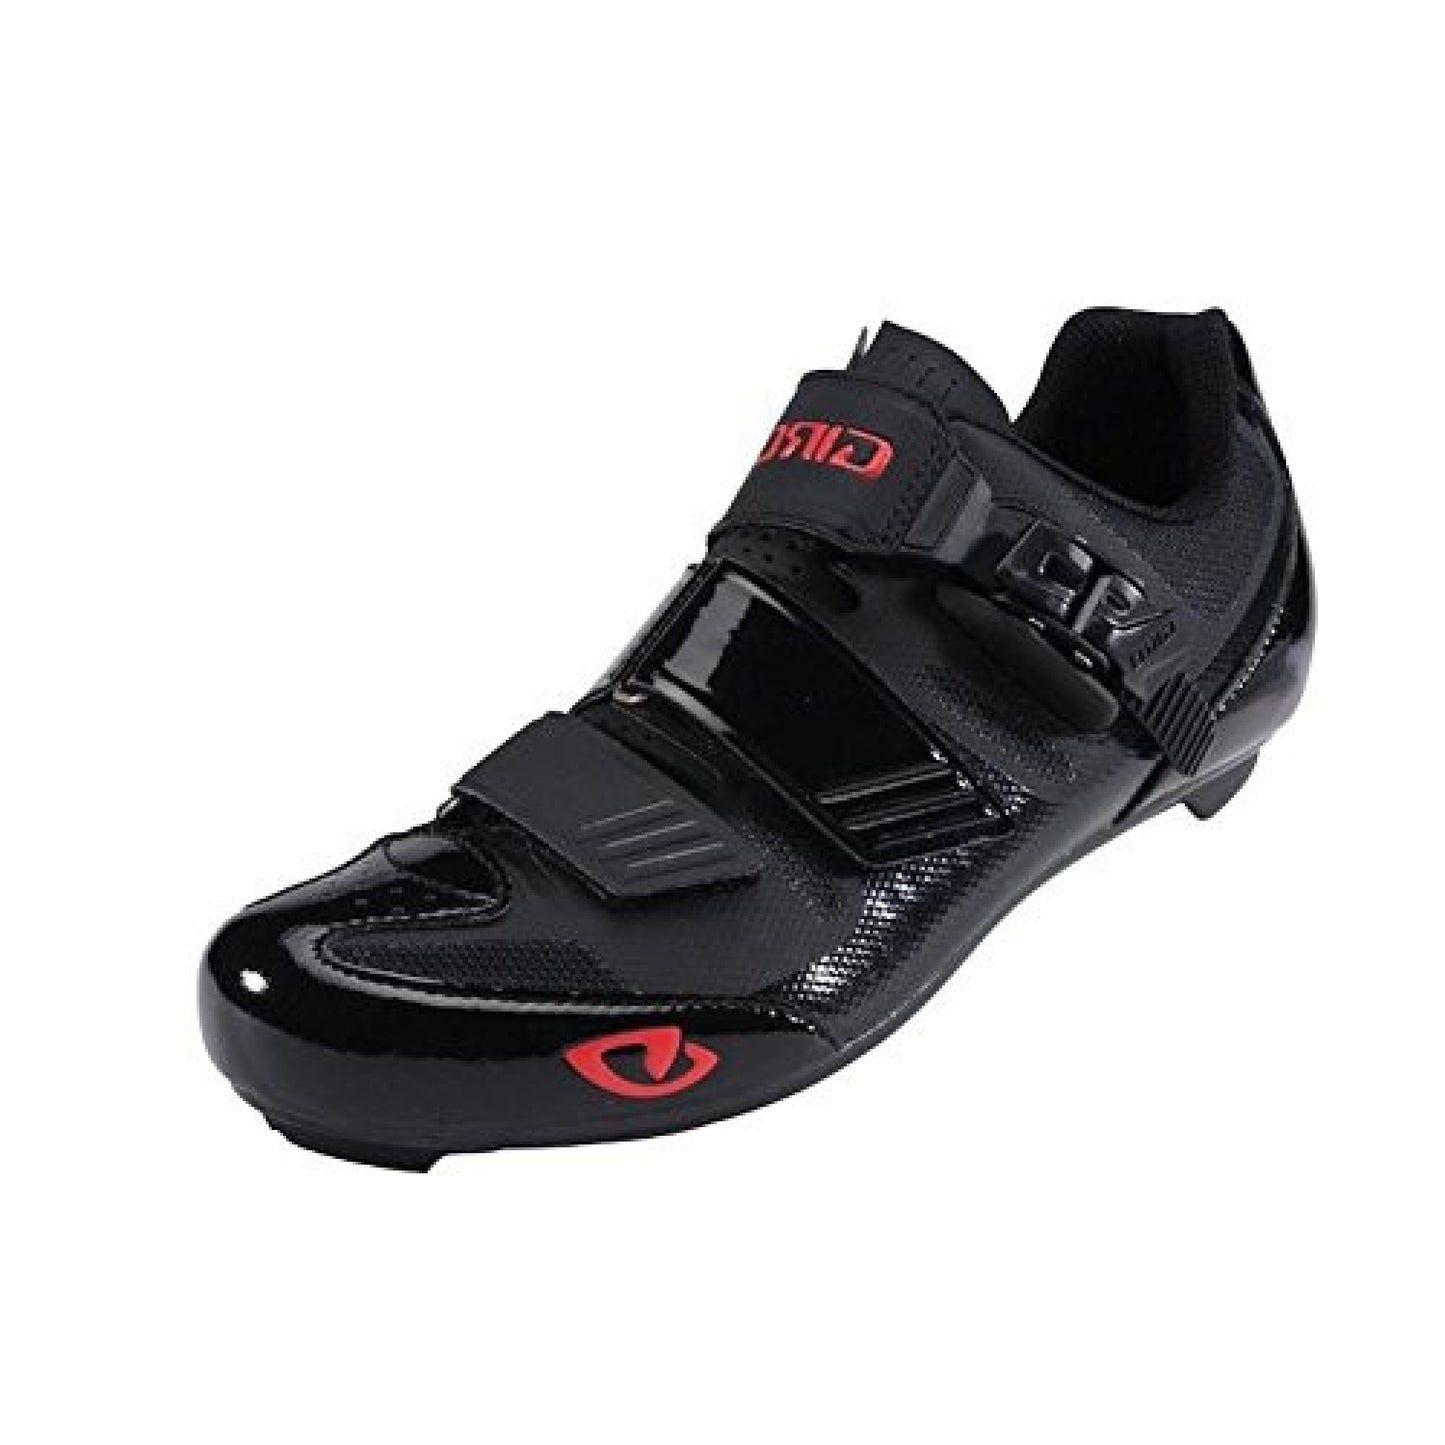 Giro Apeckx II HV Shoe Black Bright Red 41.5 Bike Shoes